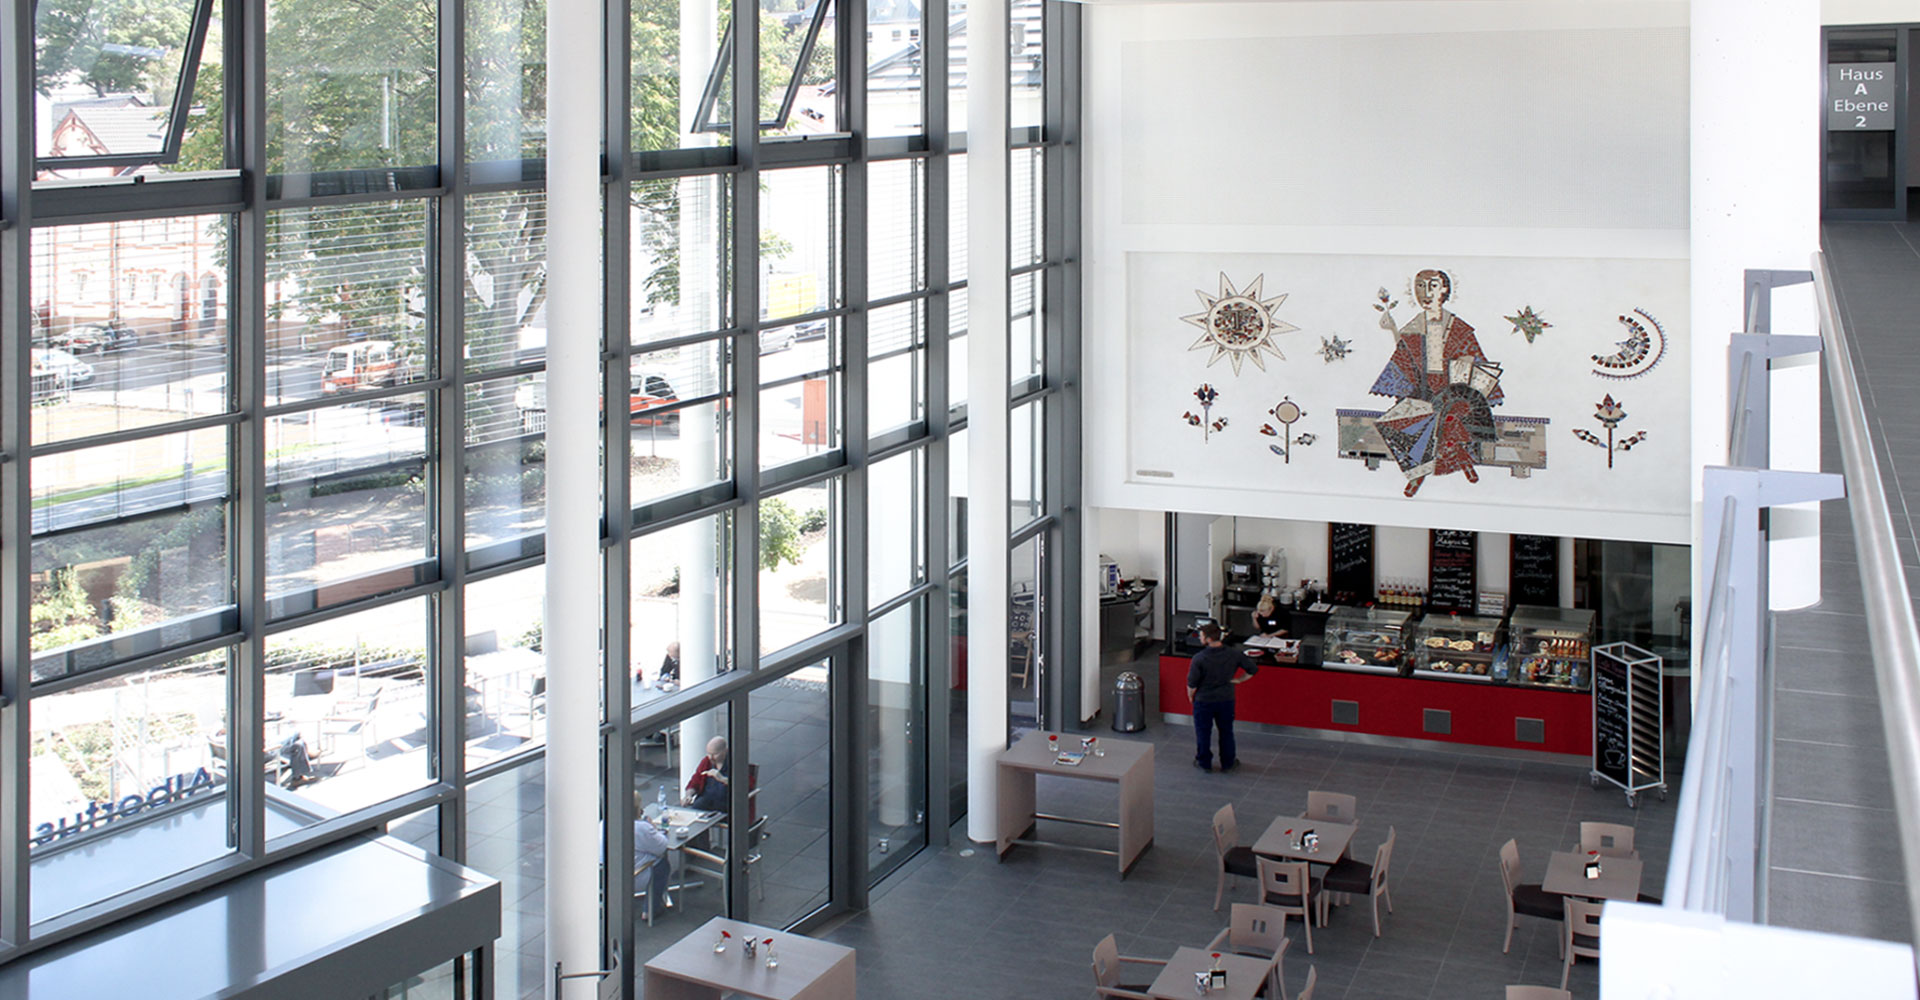 Blick in das Foyer, Ambulantes Zentrum Albertus Magnus Siegen, mga consult Rheinbreitbach, Konzeption und Planung